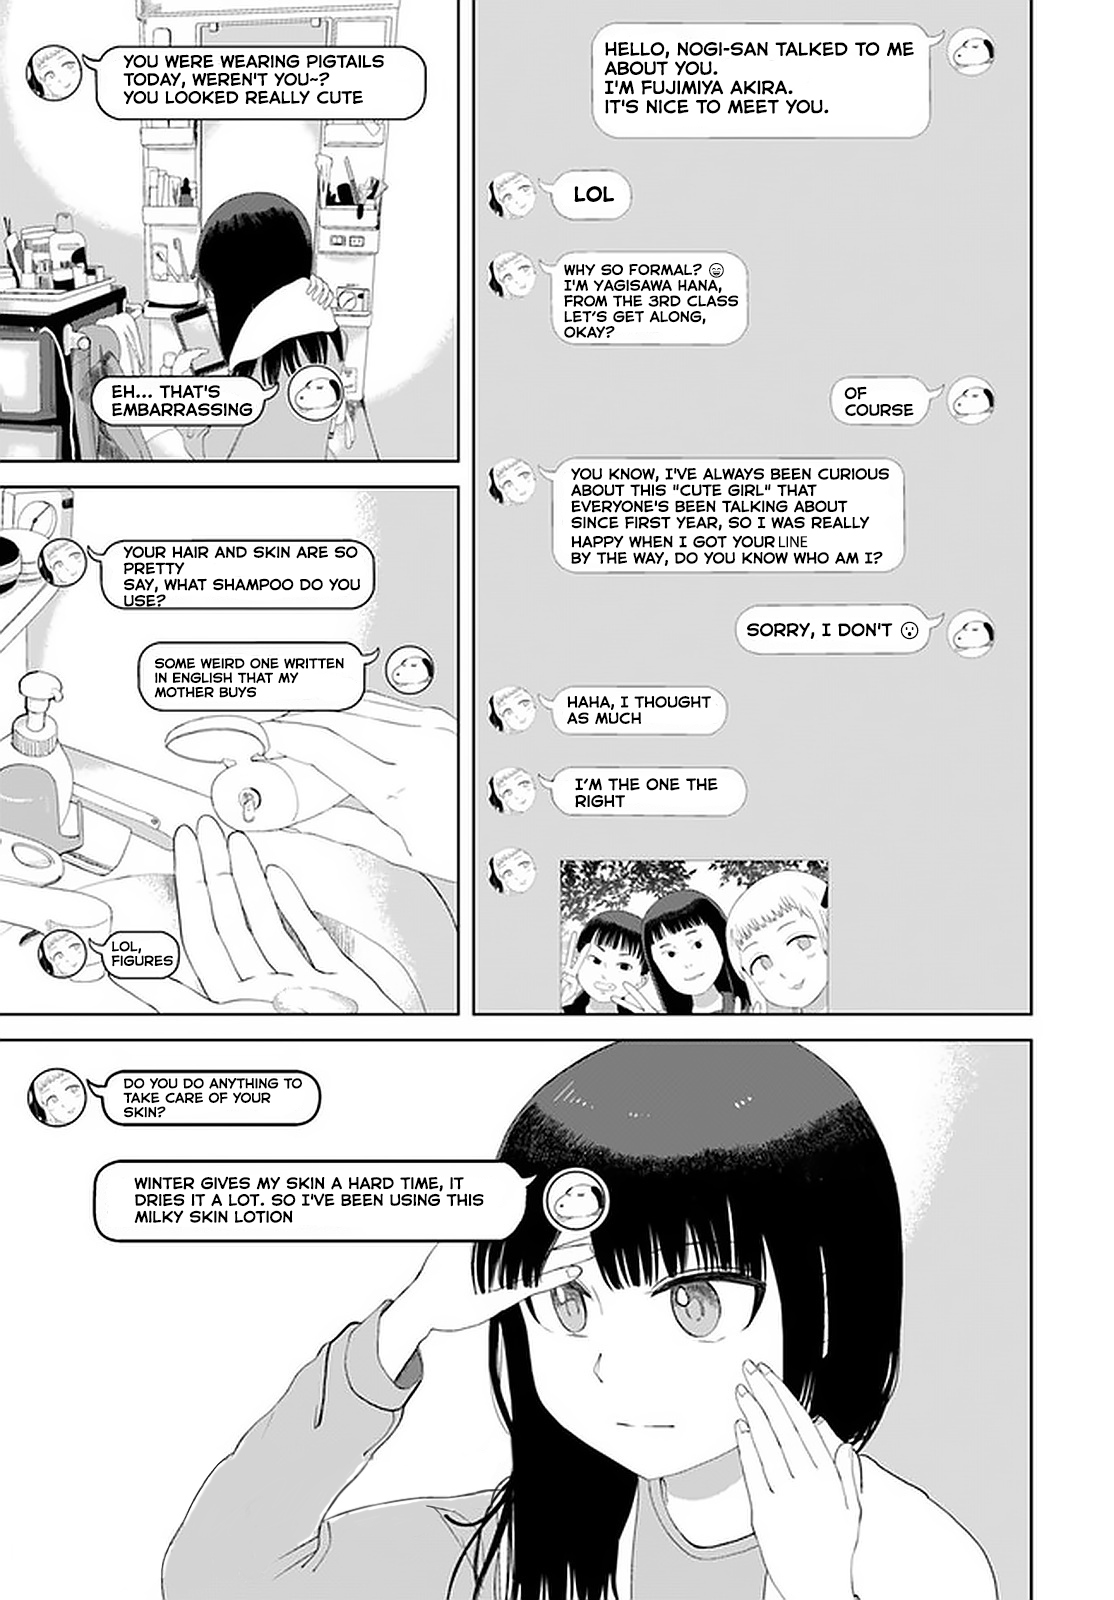 Ore Ga Watashi Ni Naru Made - Page 3